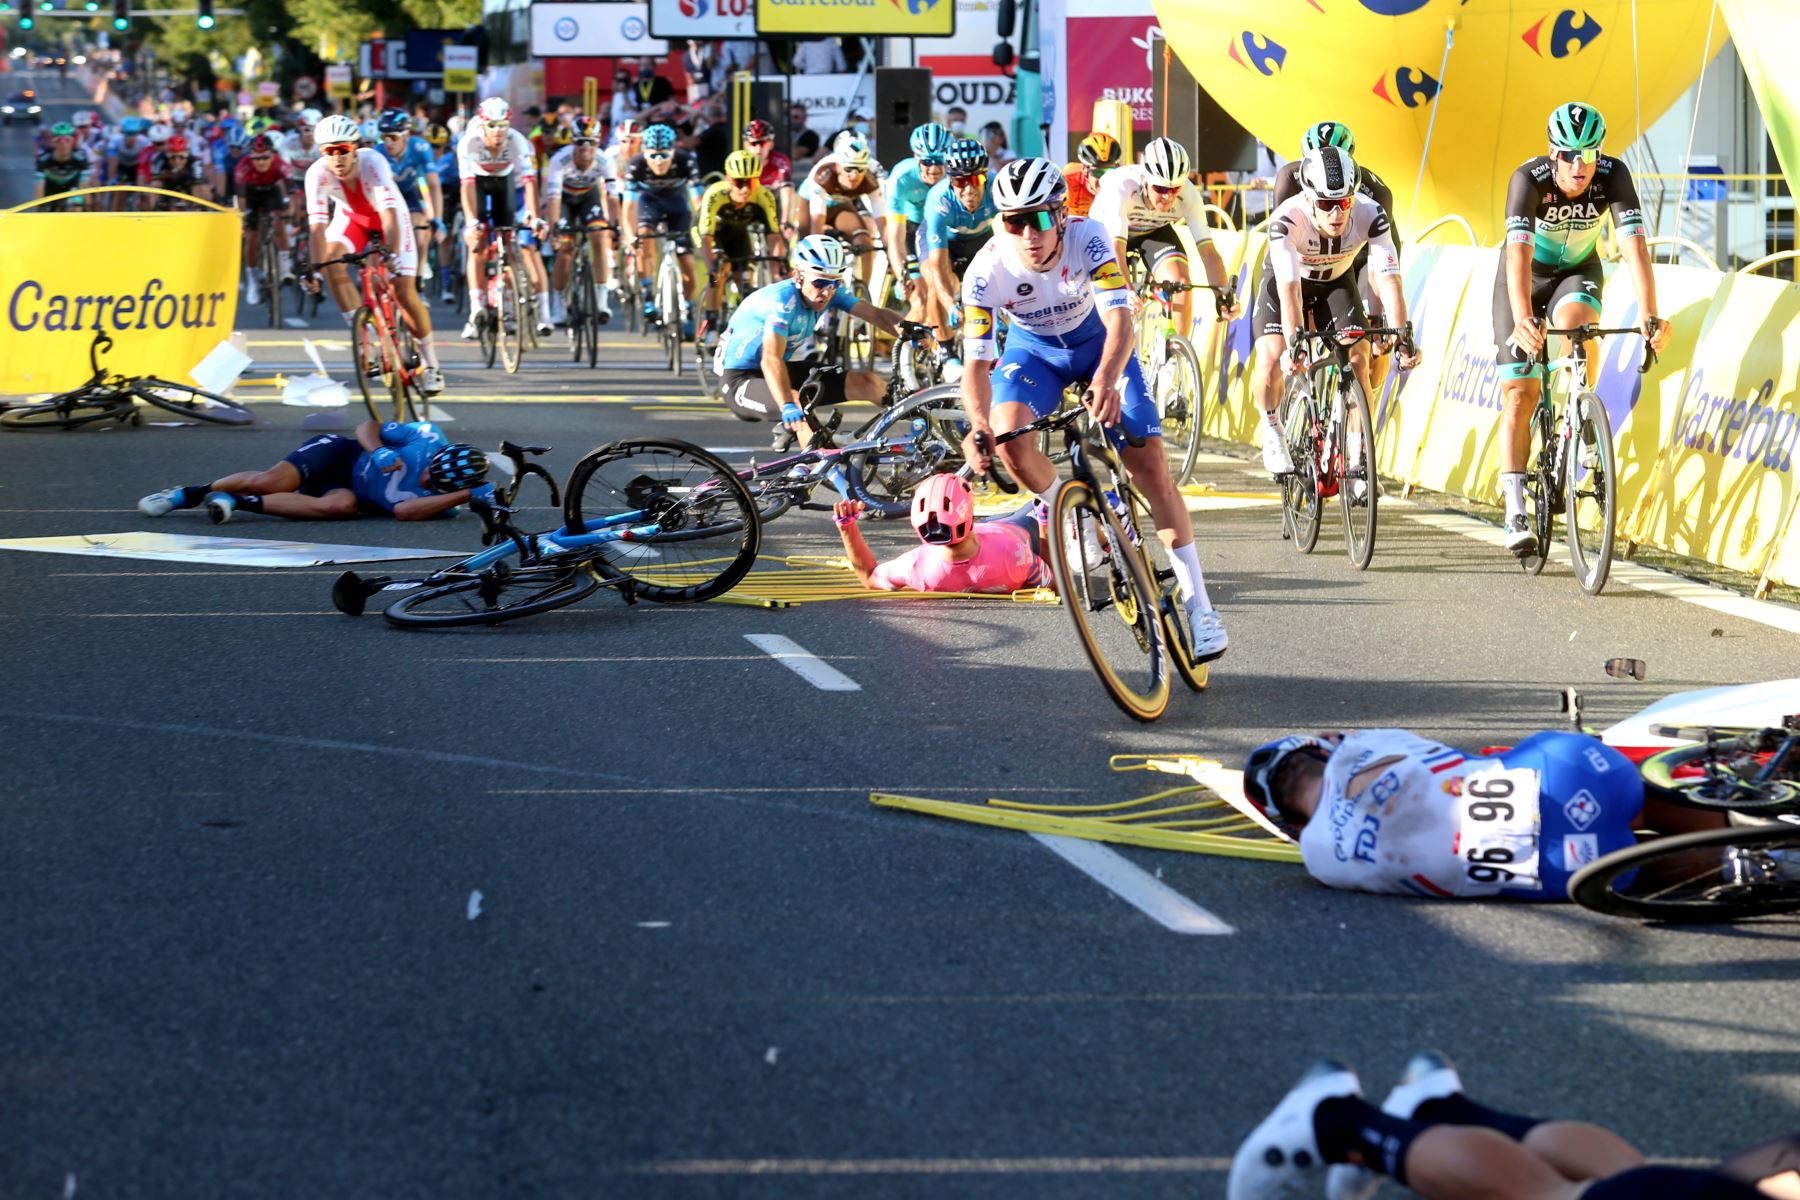 Los ciclistas caen cerca de la línea de meta durante la primera etapa de la carrera ciclista Tour de Pologne, más de 195.8 km entre Chorzow y Katowice, sur de Polonia.
Foto: EFE